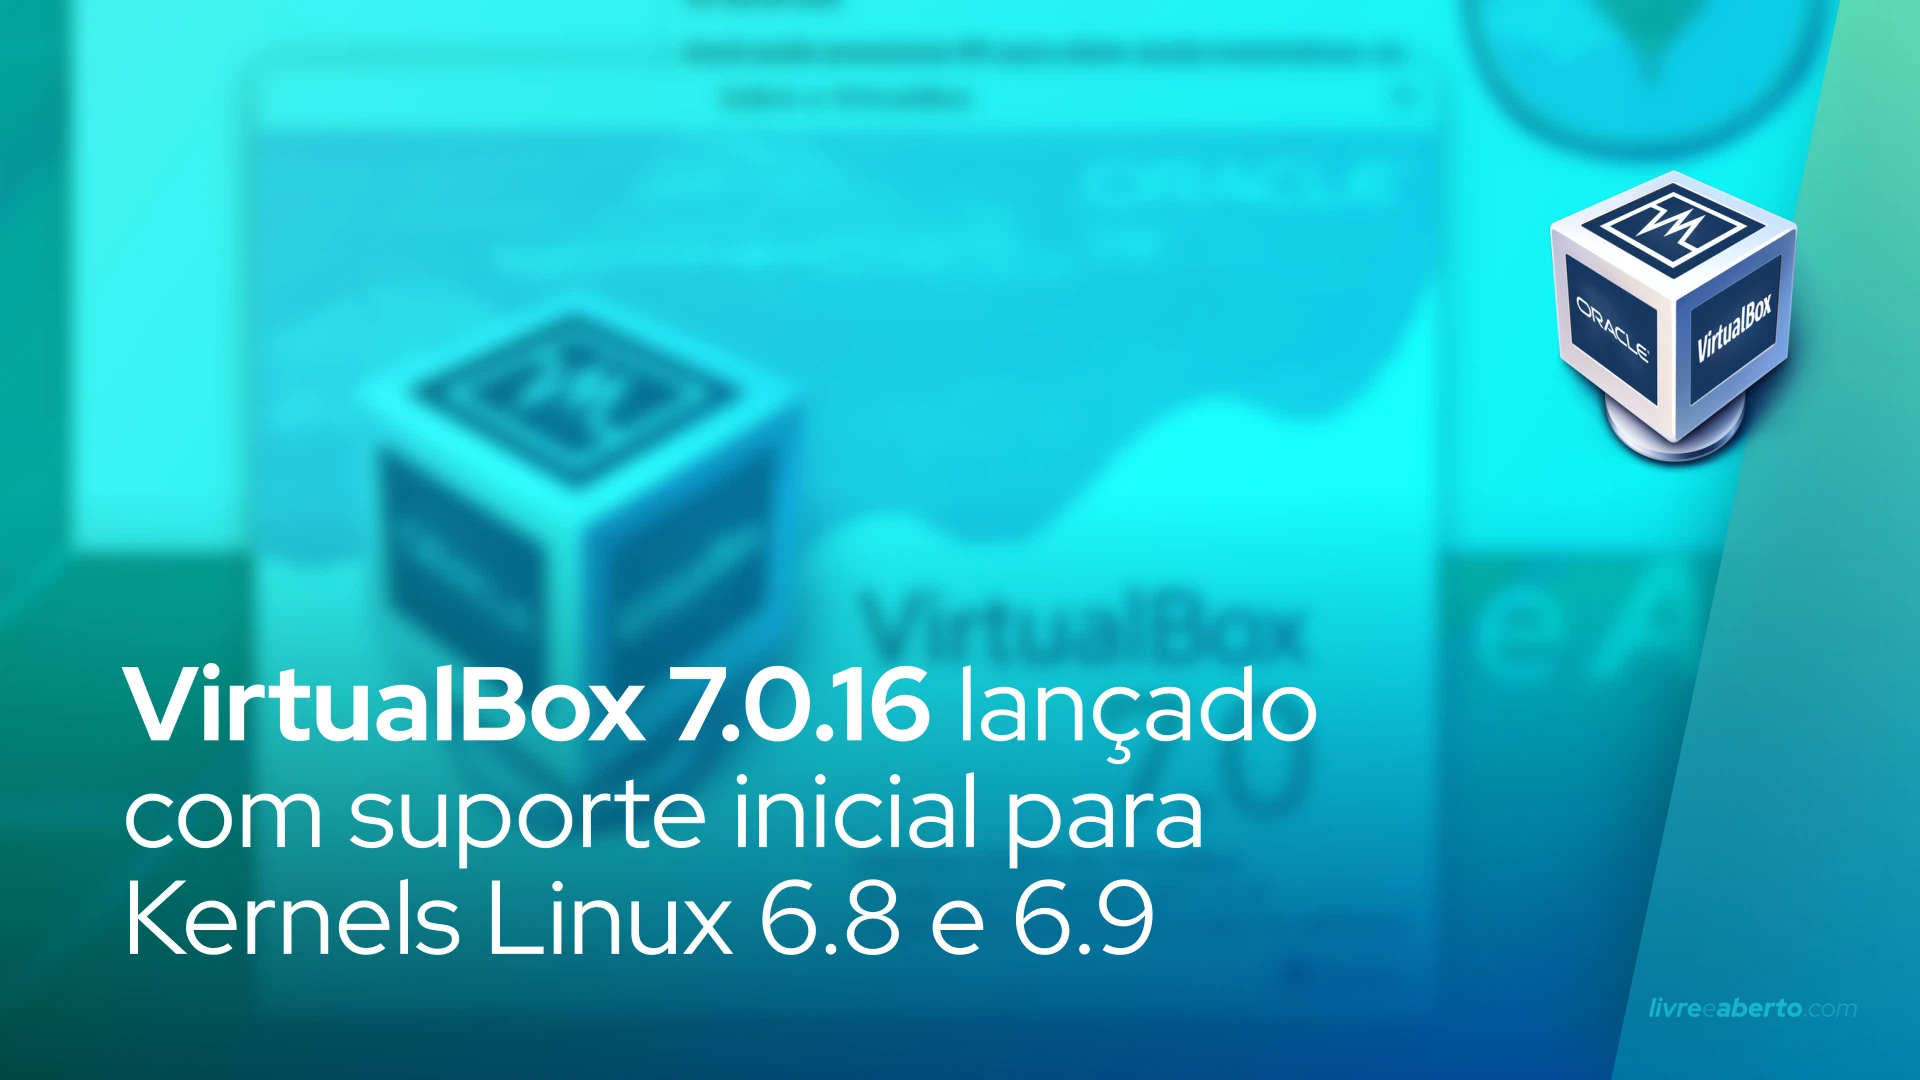 VirtualBox 7.0.16 lançado com suporte inicial para Kernels Linux 6.8 e 6.9